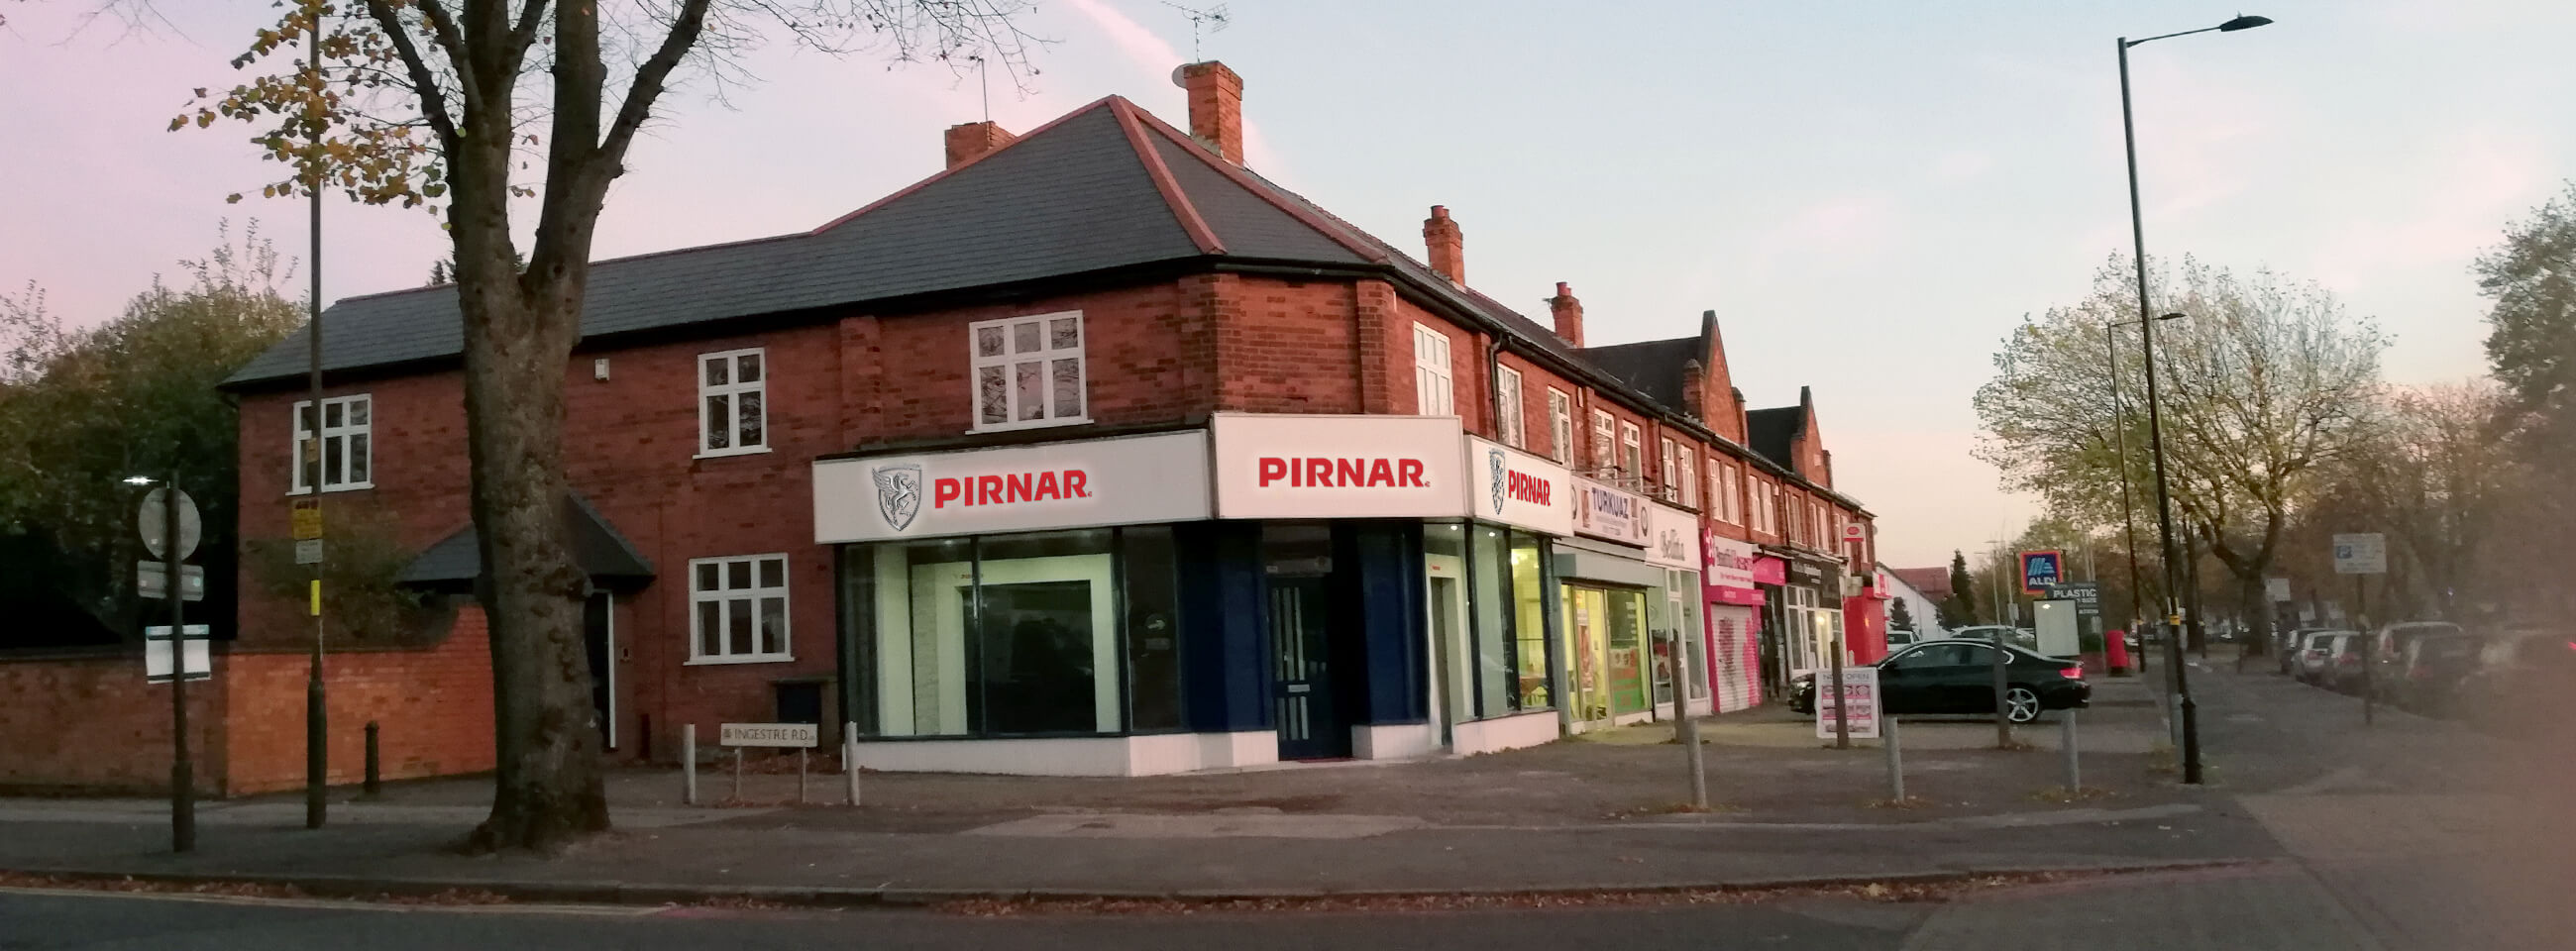 Pirnar showroom in Birmingham